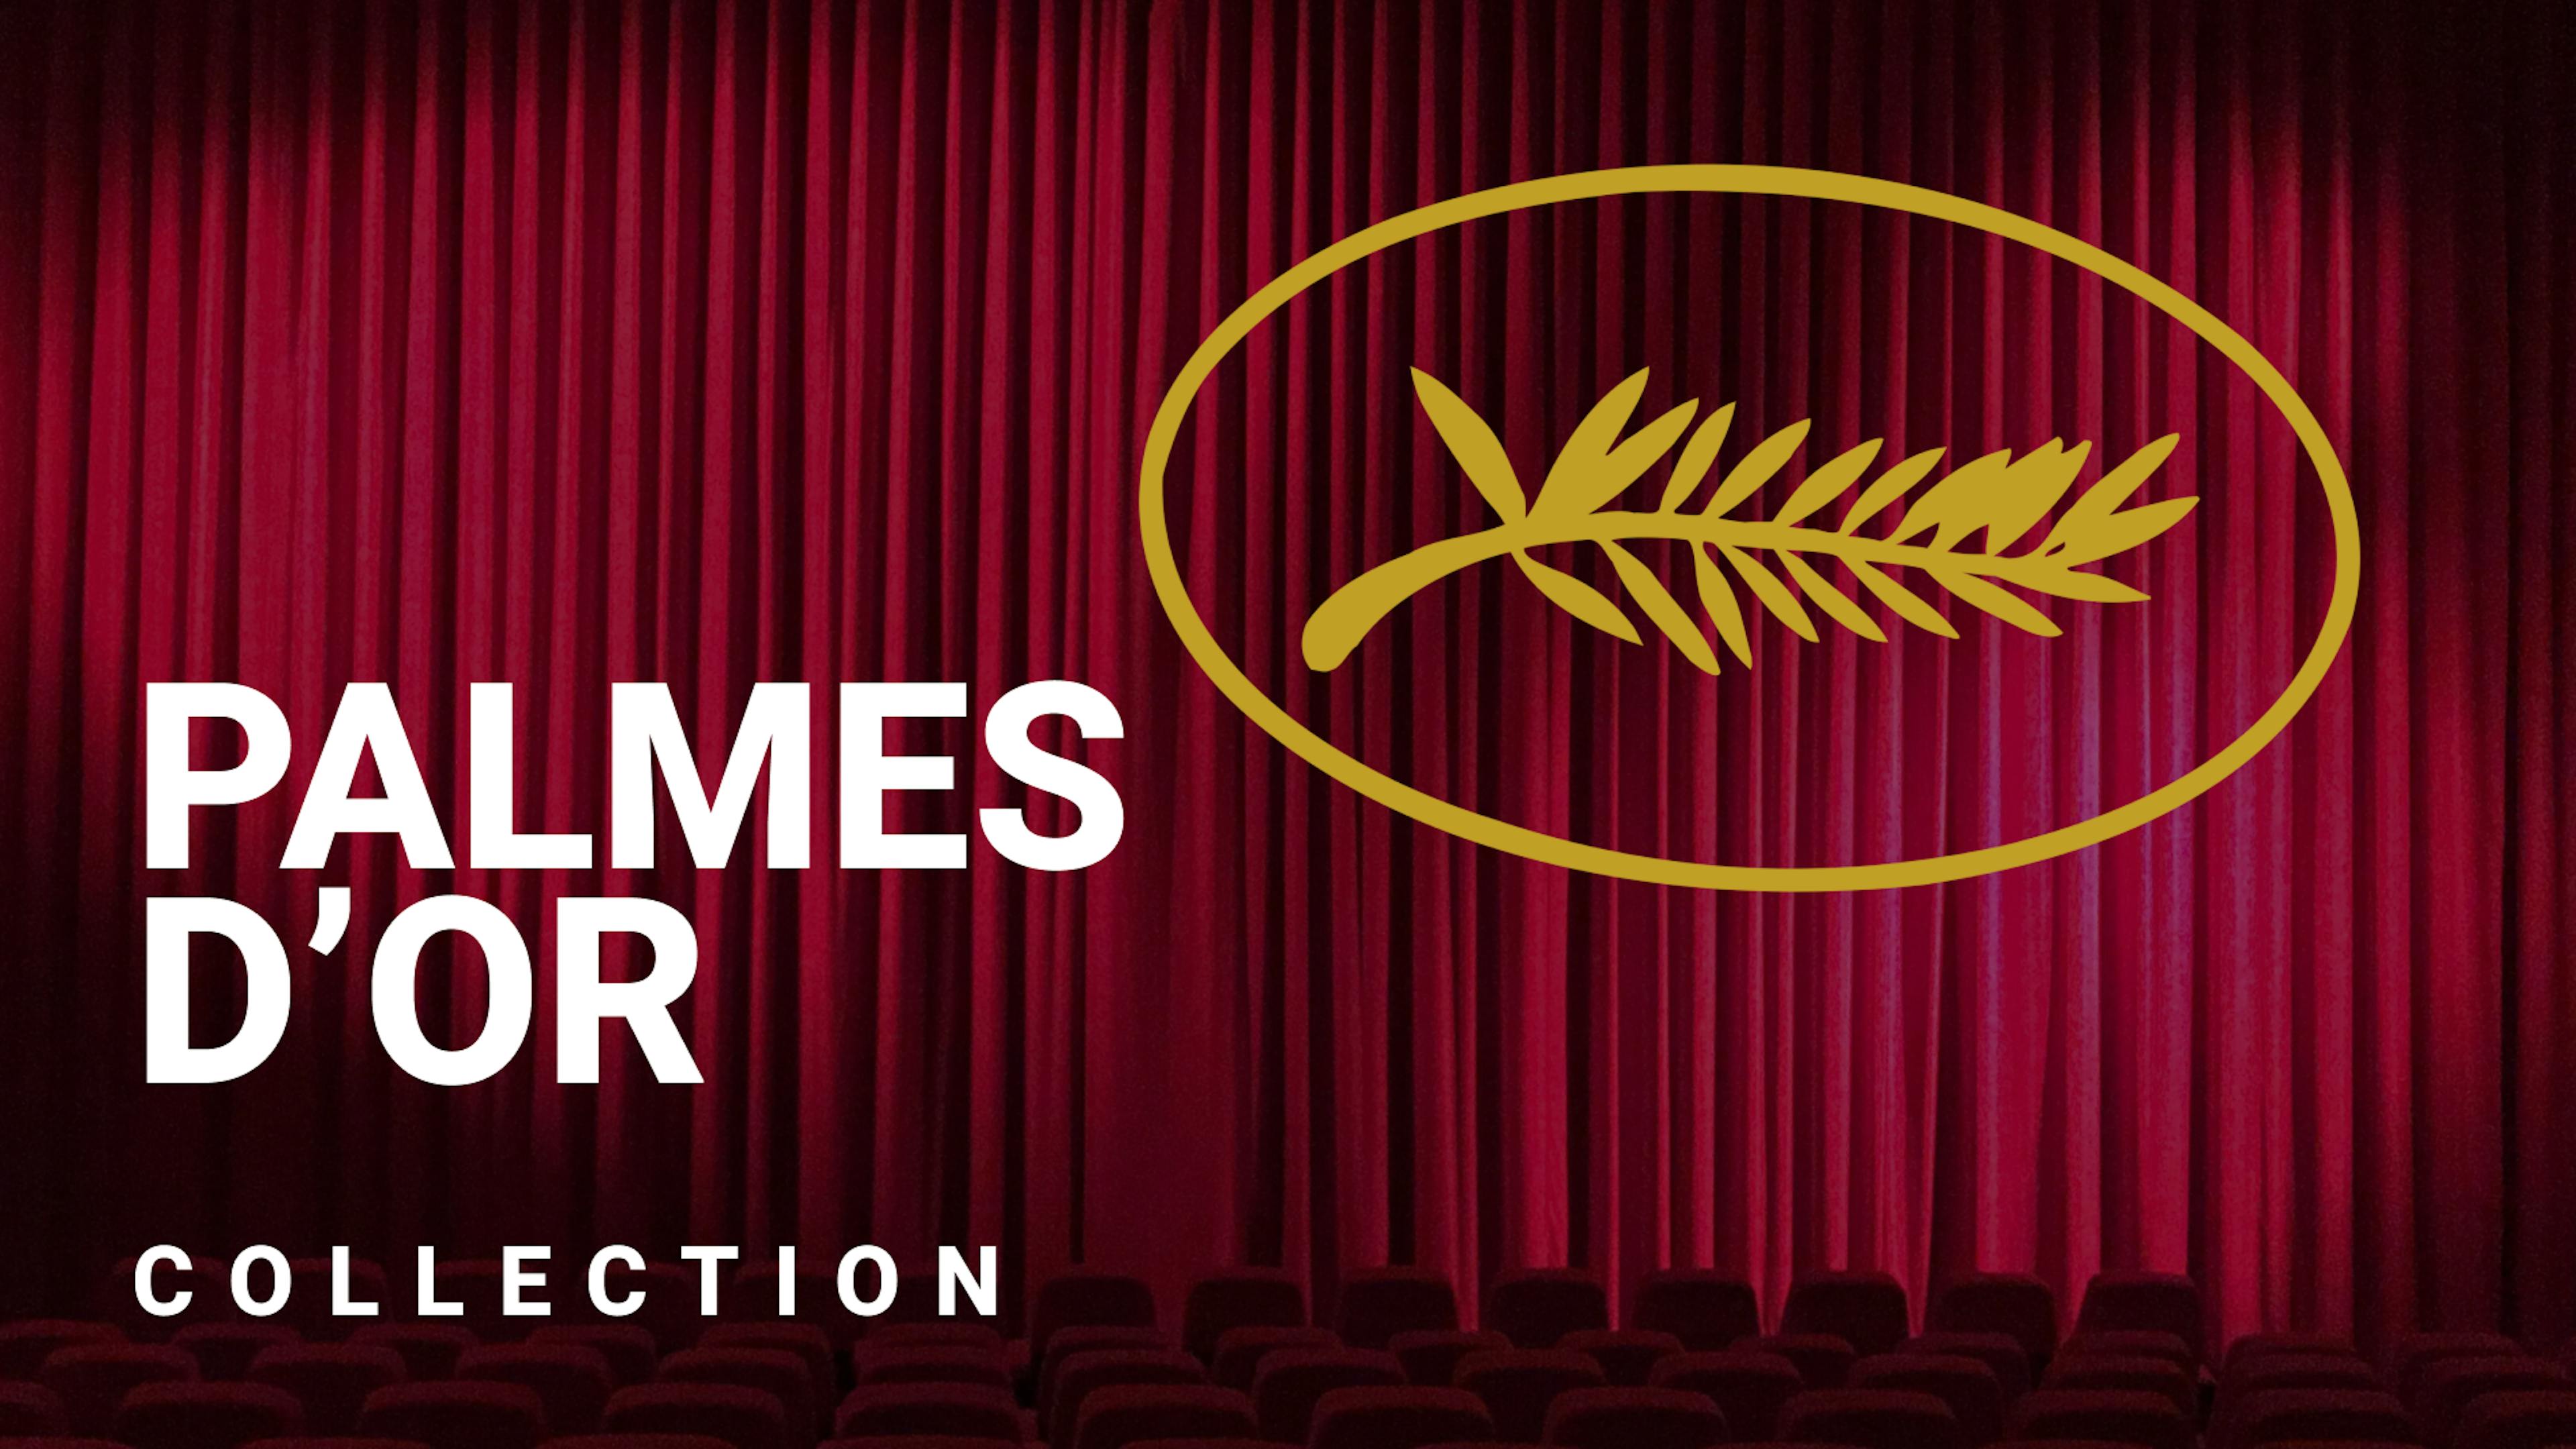 Les Palmes d'Or du Festival de Cannes